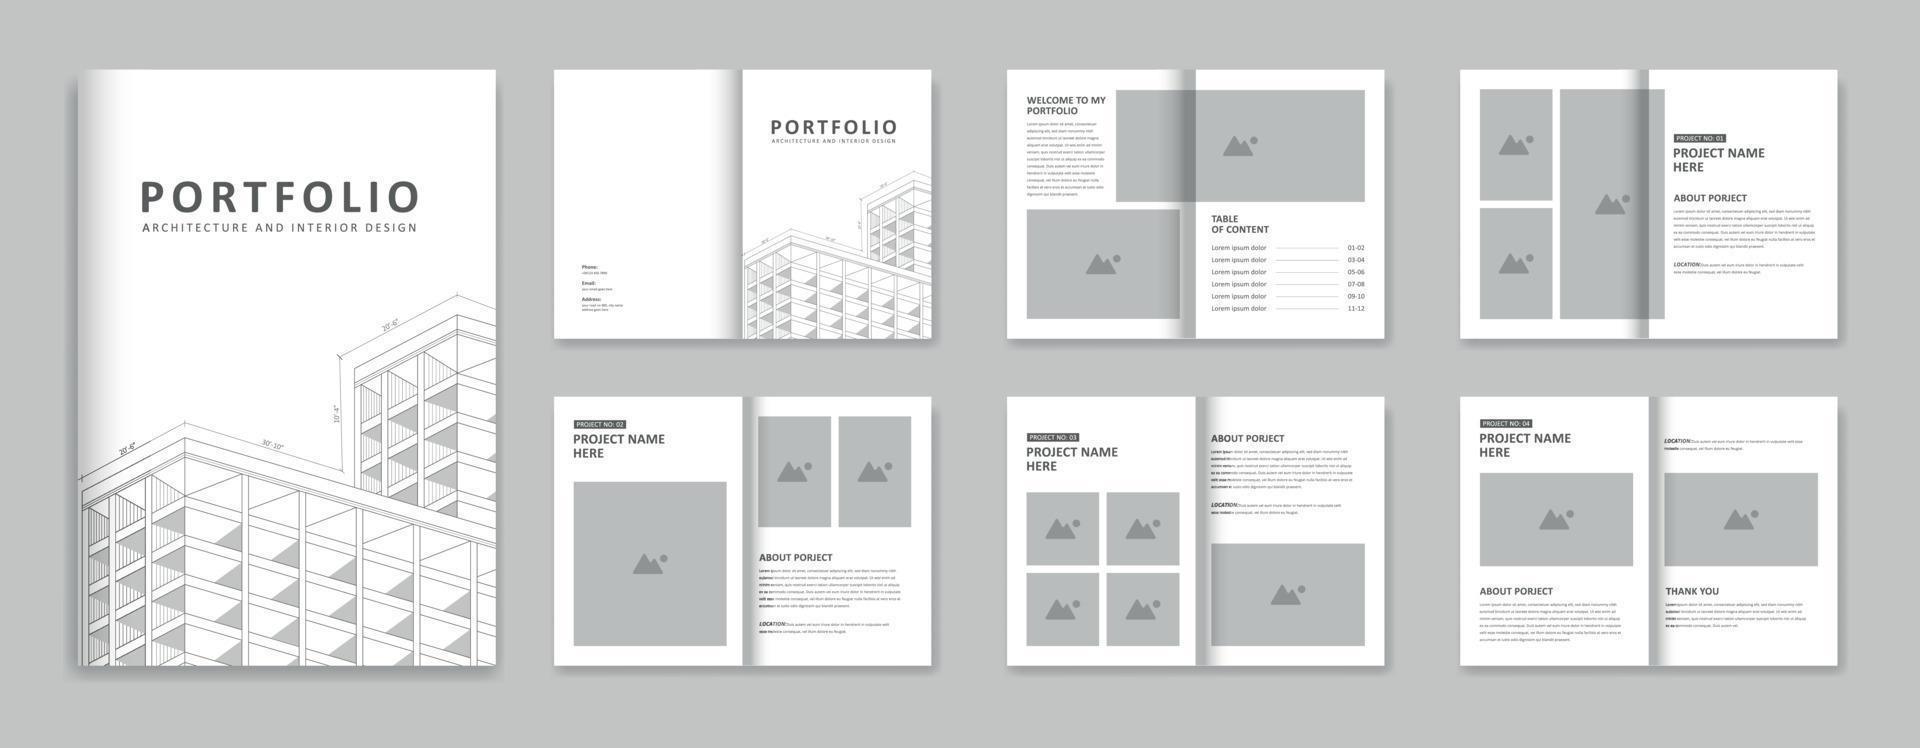 Architecture Portfolio Design Template, Portfolio Architecture And Interior Layout Design, A4 Size Print Ready Brochure For Architectural Design. vector